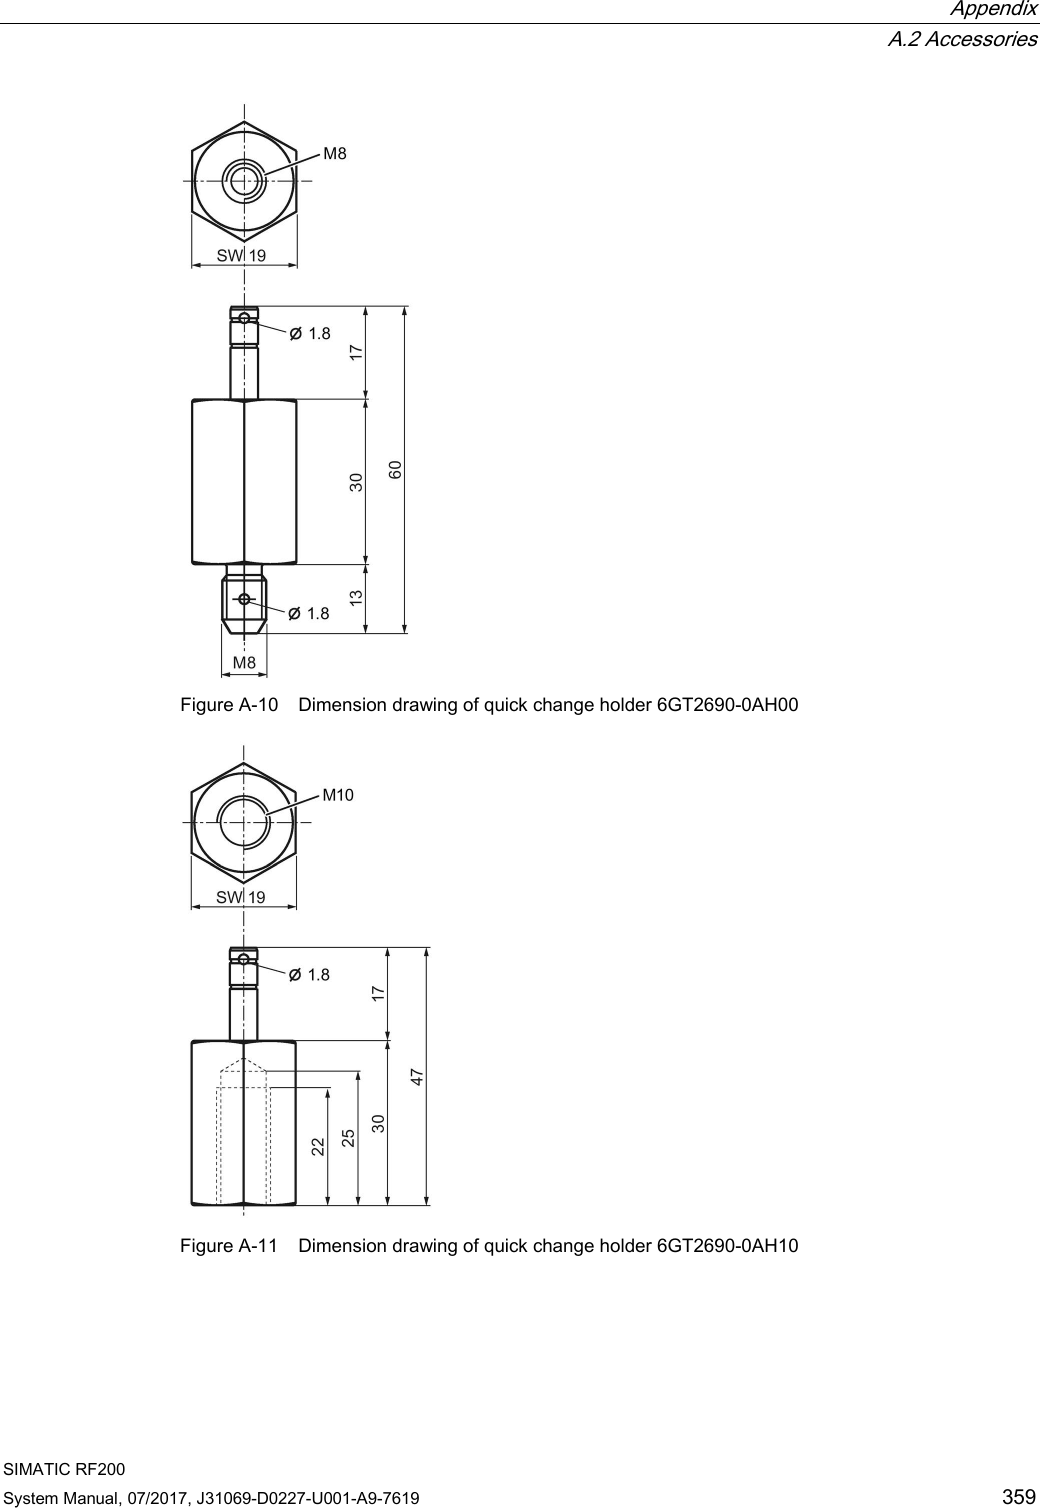  Appendix  A.2 Accessories SIMATIC RF200 System Manual, 07/2017, J31069-D0227-U001-A9-7619 359  Figure A-10 Dimension drawing of quick change holder 6GT2690-0AH00  Figure A-11 Dimension drawing of quick change holder 6GT2690-0AH10 